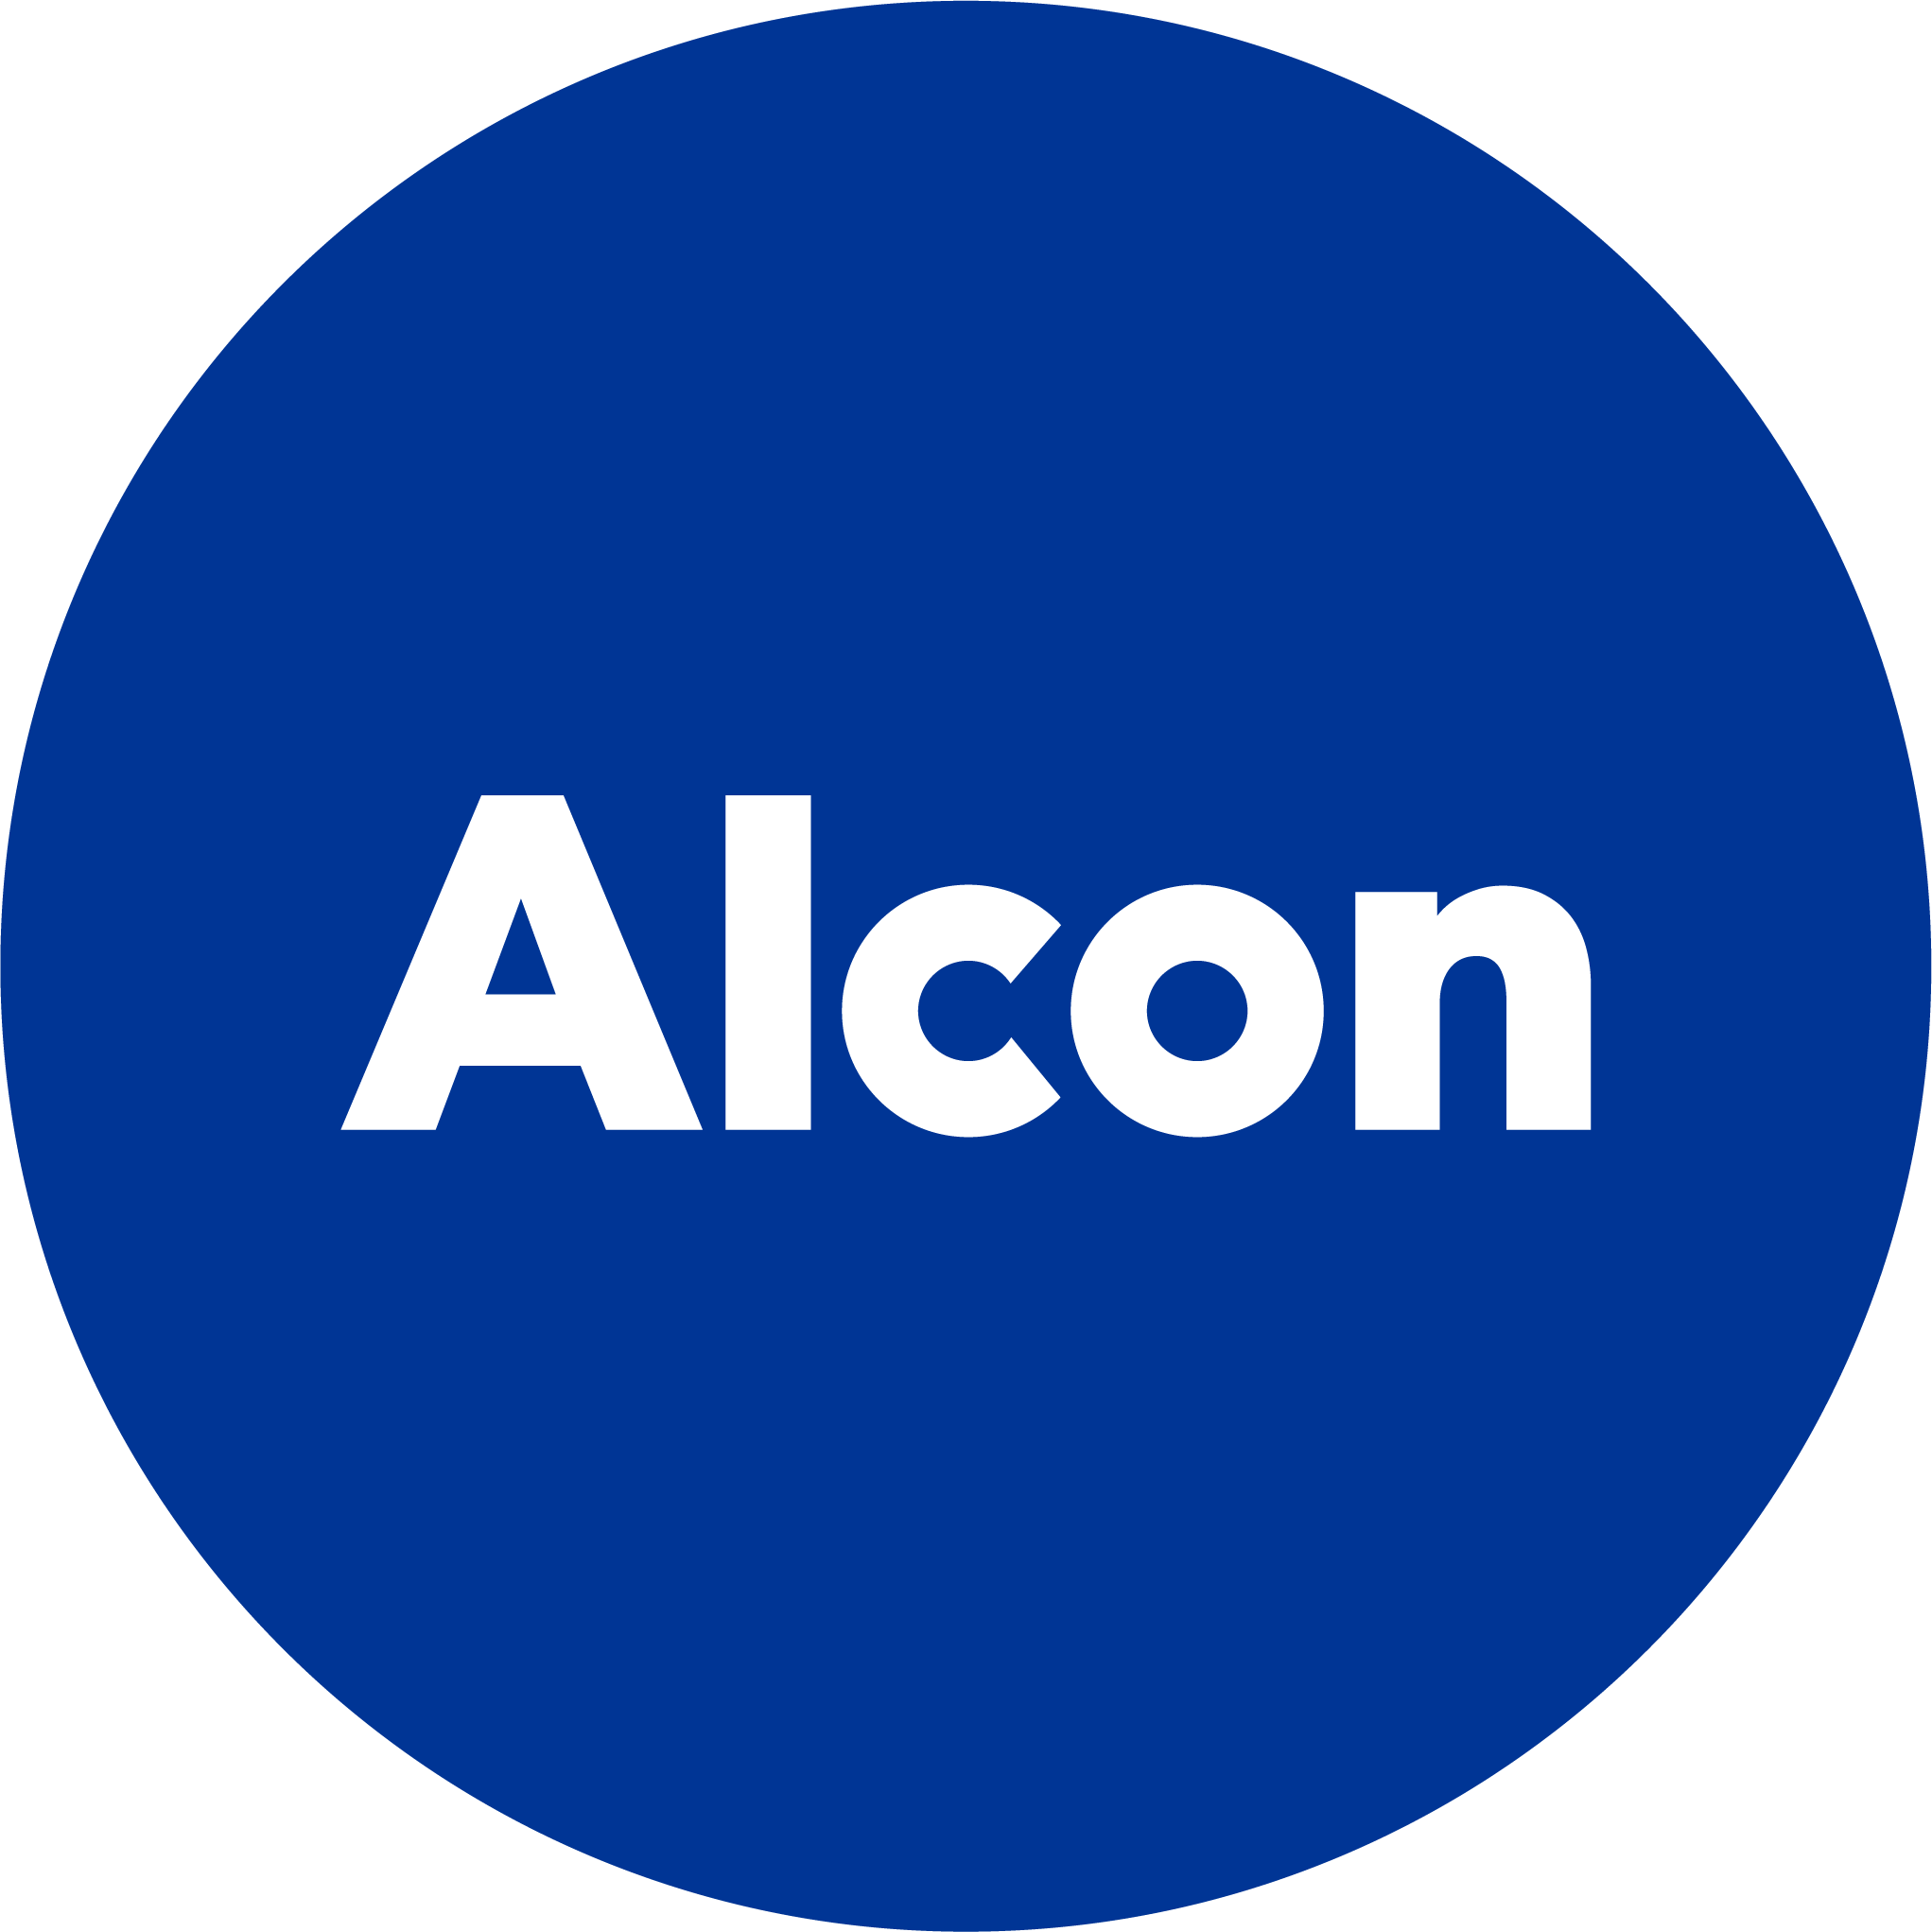 Alecon